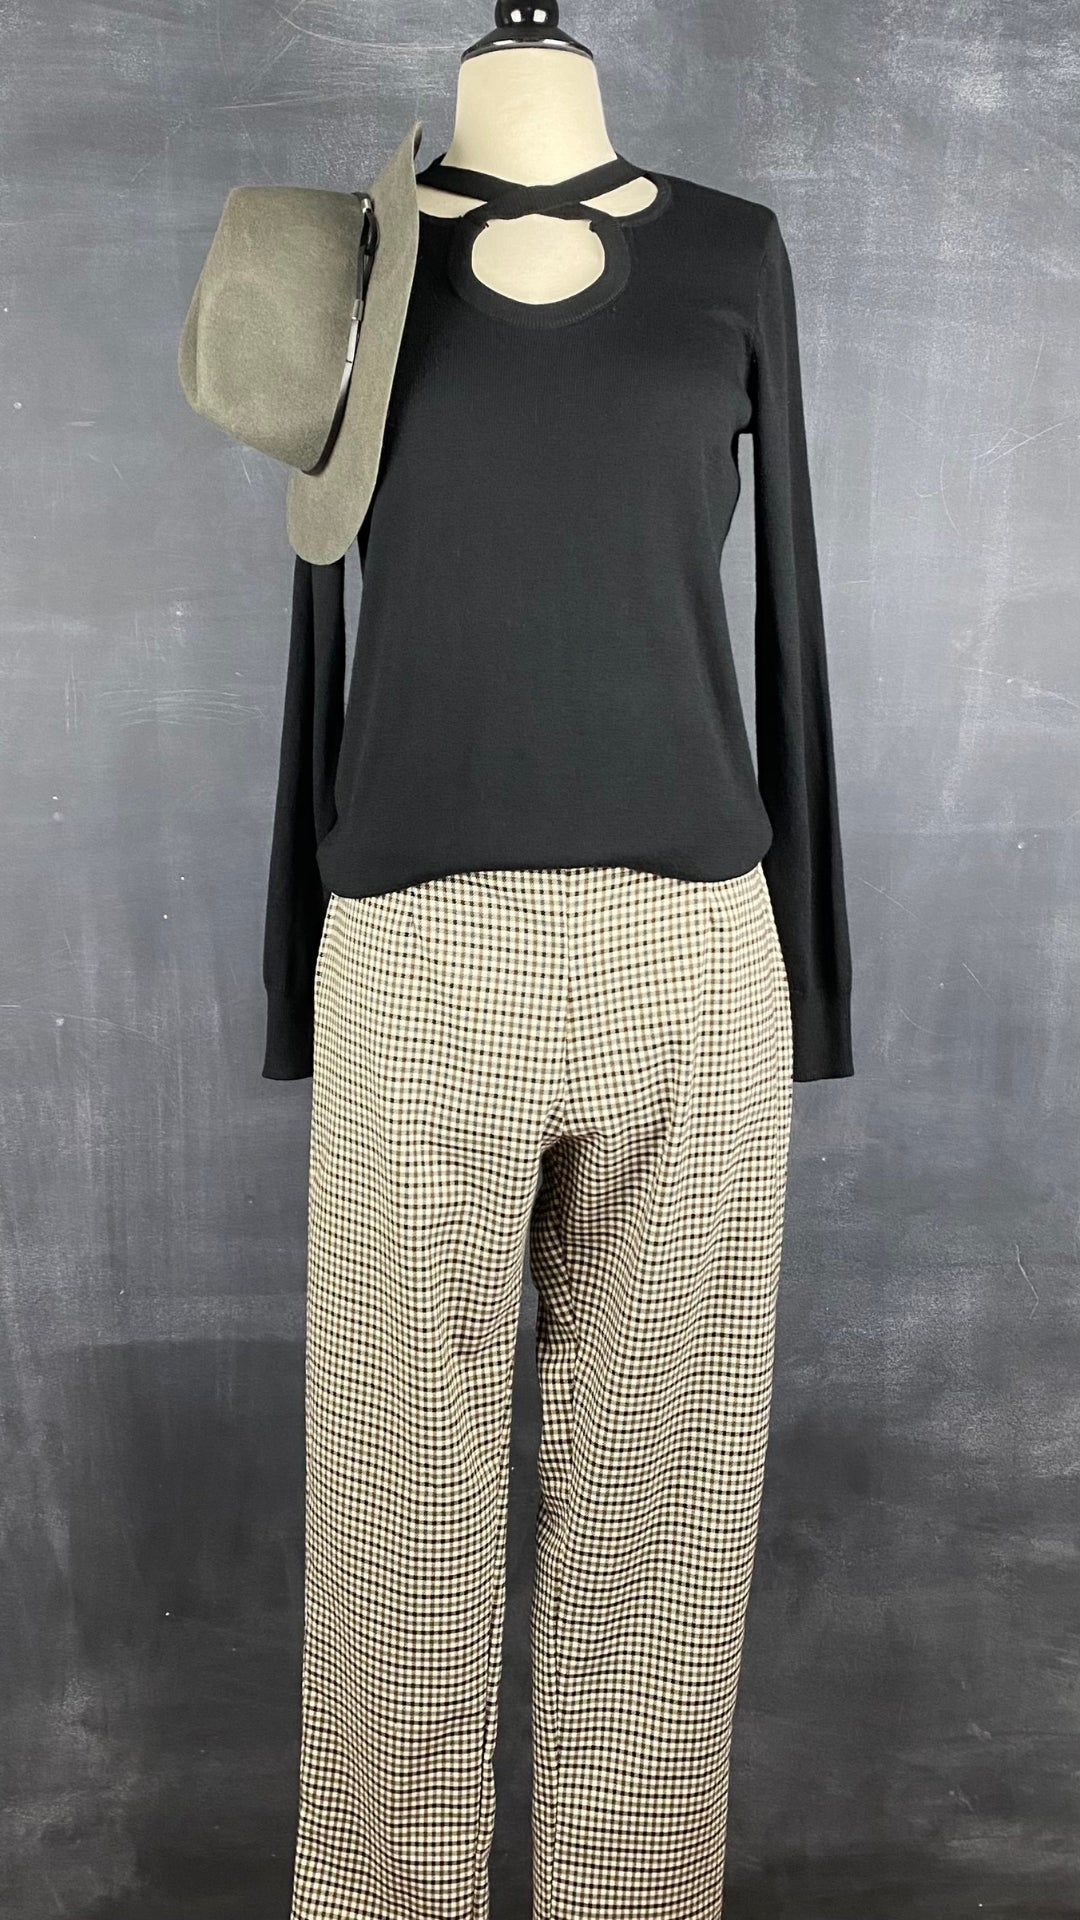 Chandail noir en tricot à encolure à ouvertures majestueuses Michael Kors, taille small. Vue de l'agencement avec le pantalon pied-de-poule automnal Essentiels & Co.